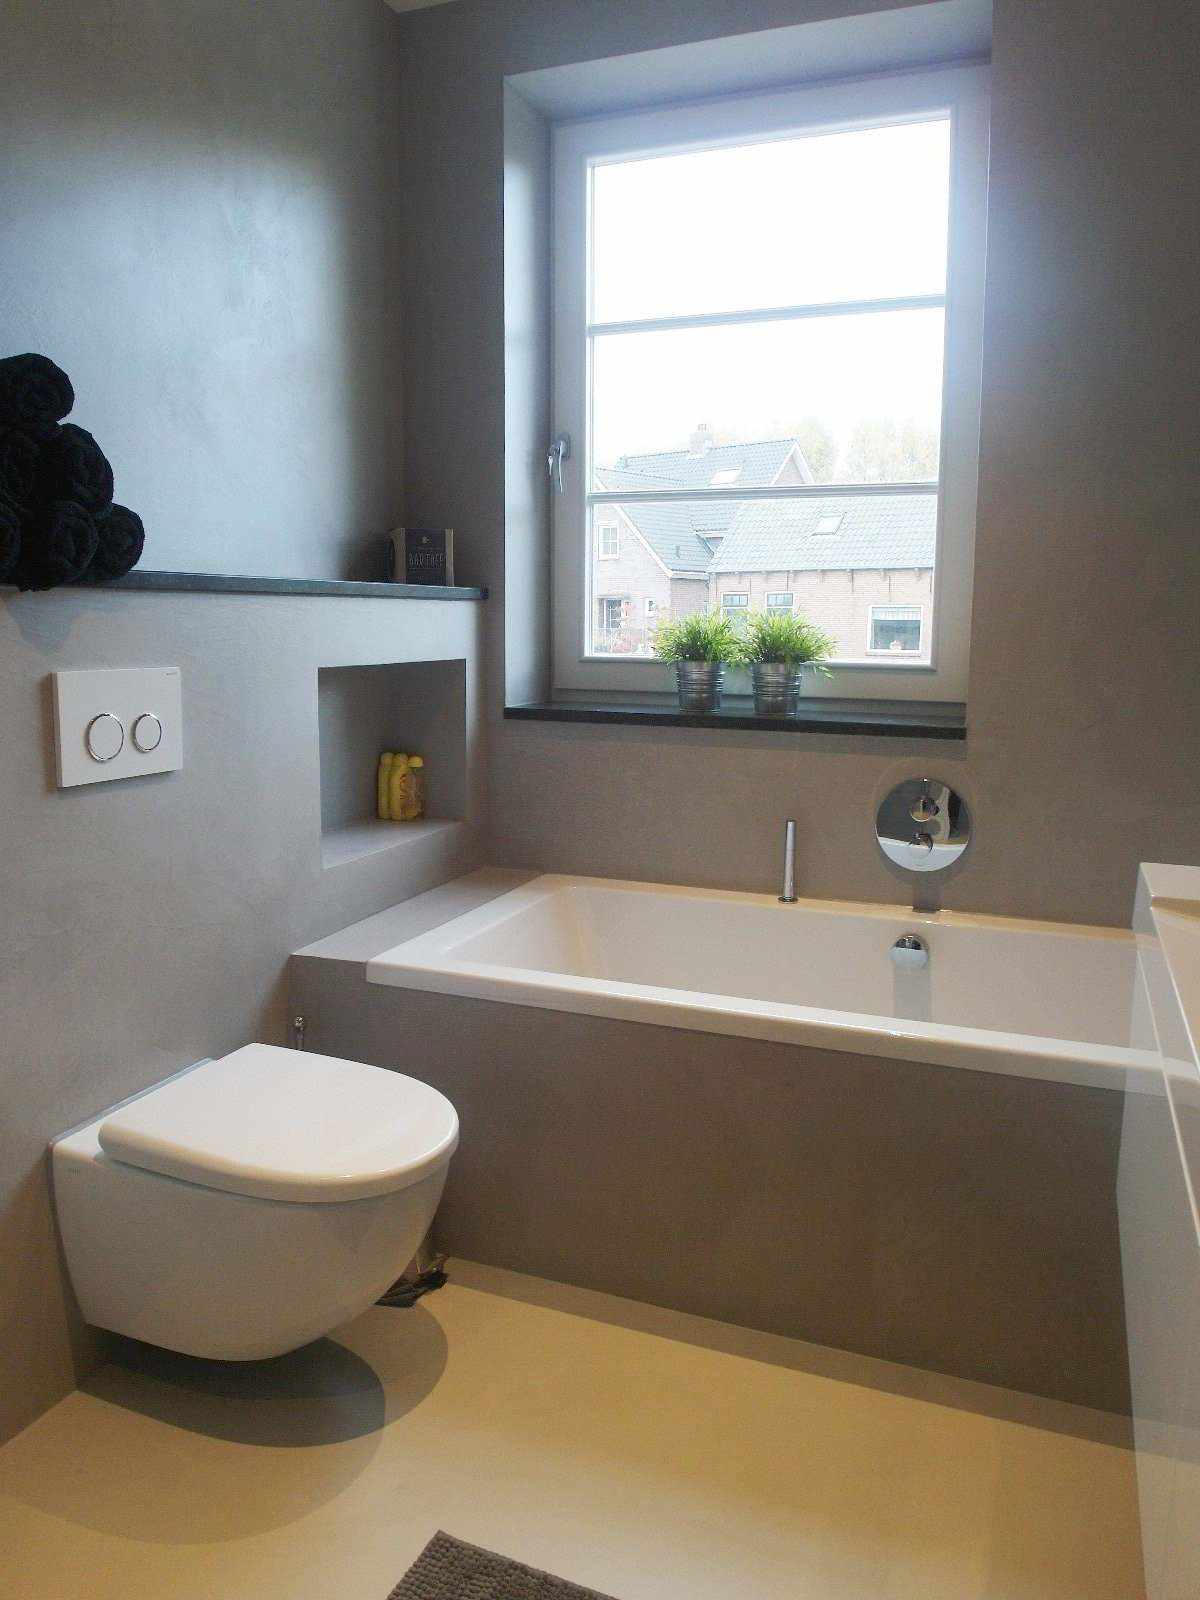 Microcimento cinzento na parede e no móvel de uma casa de banho na Holanda no projeto Decas.